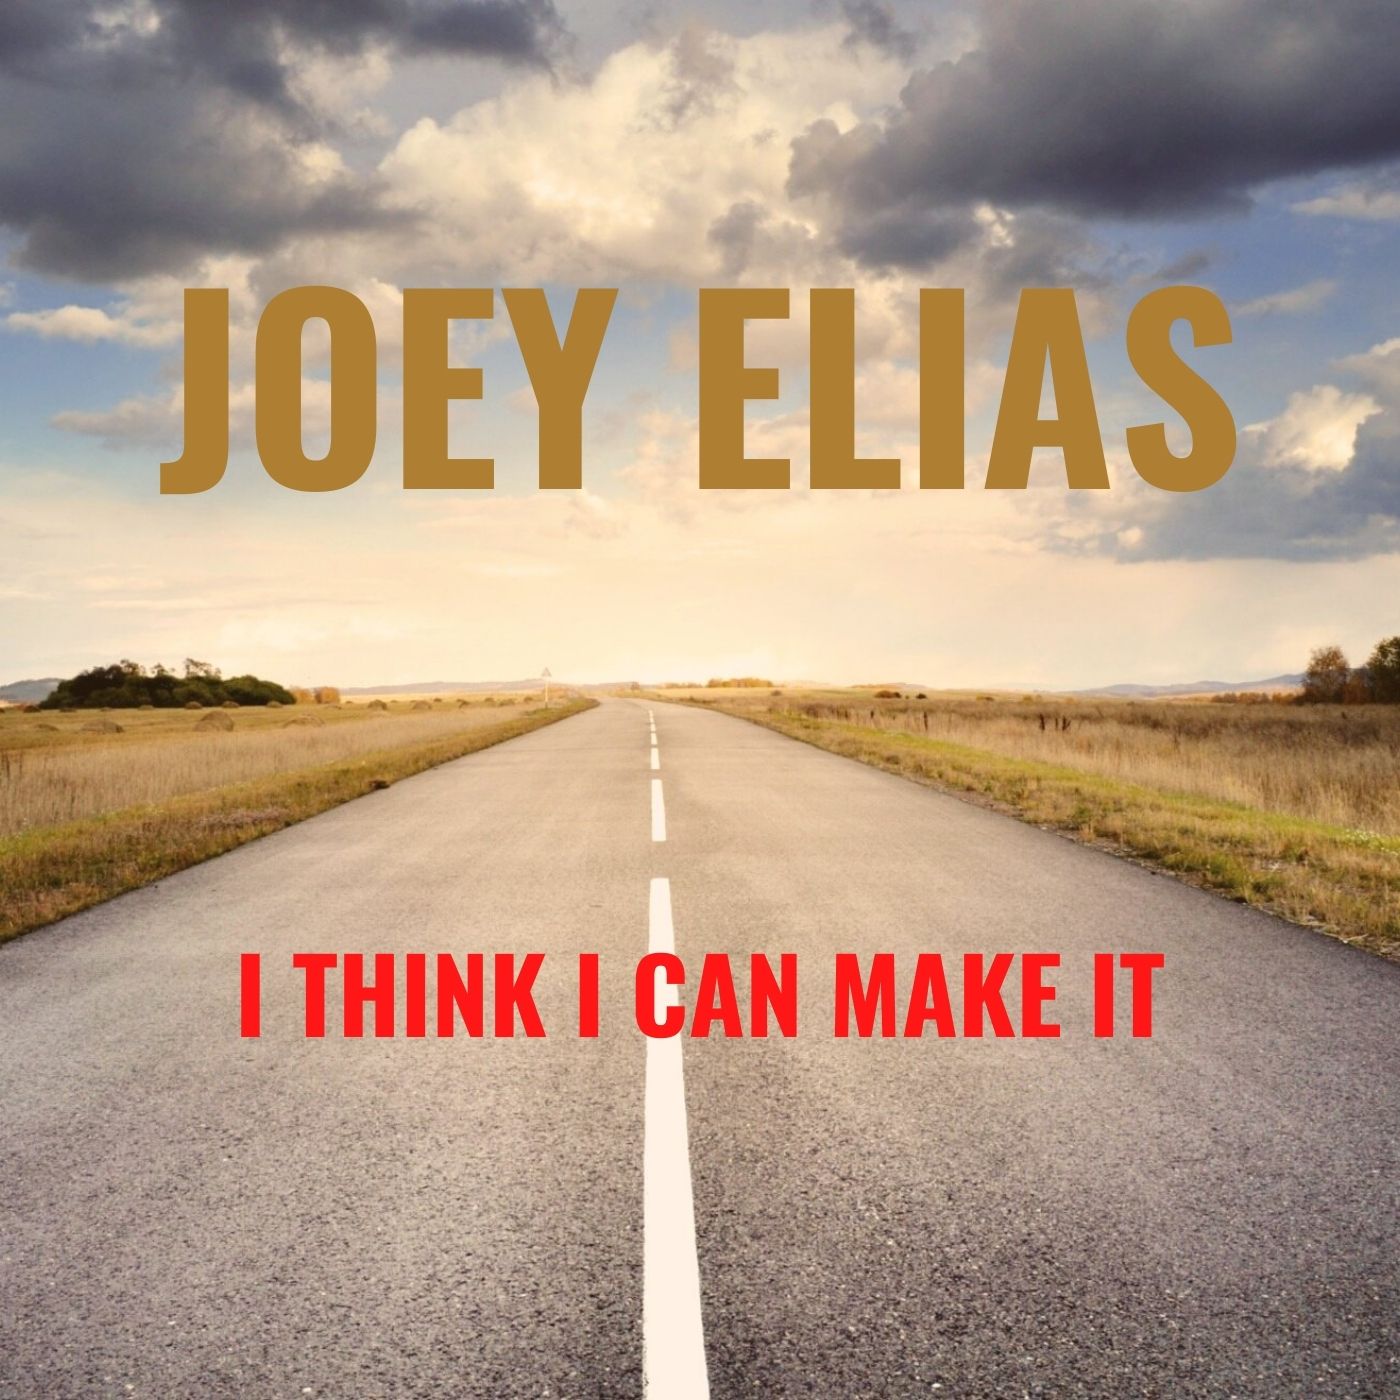 Joey Elias